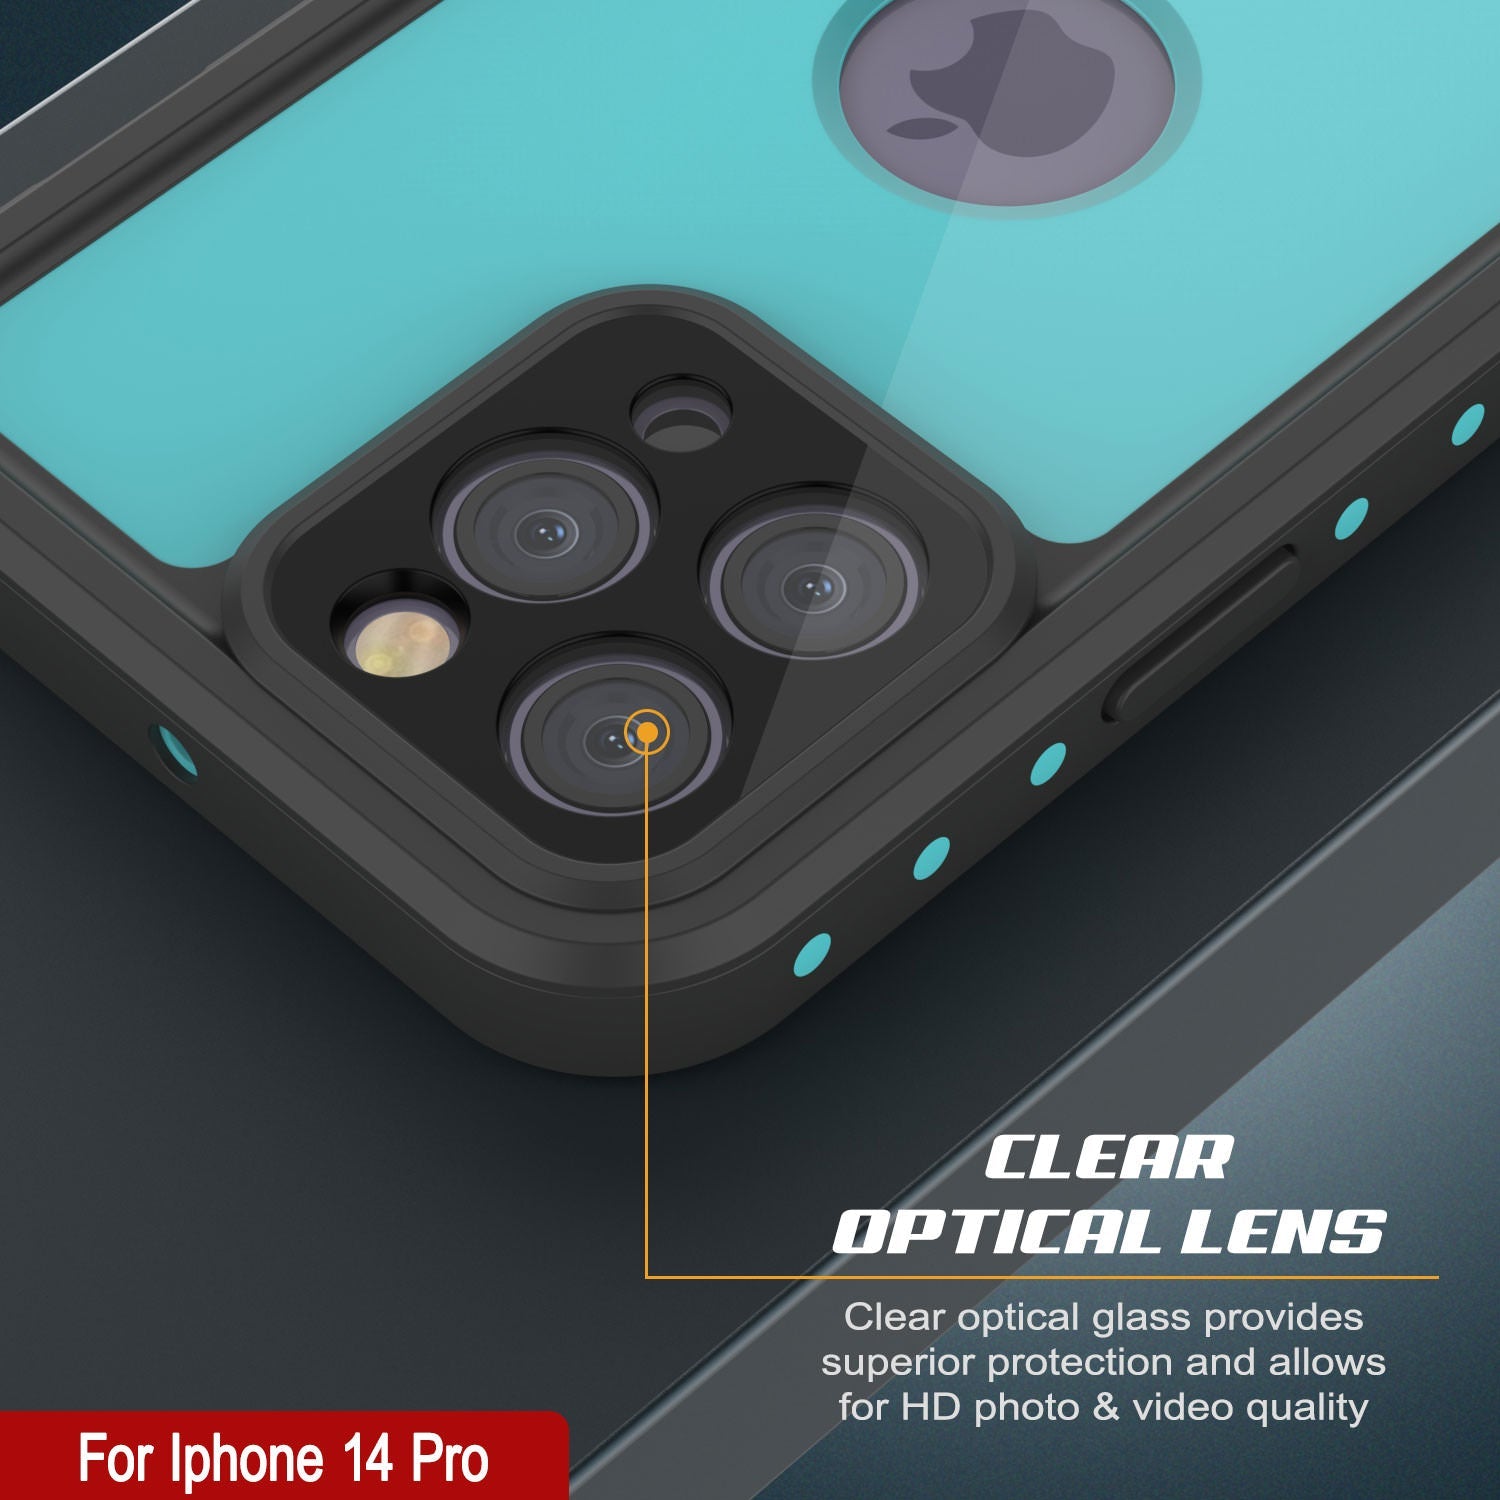 iPhone 14 Pro Waterproof IP68 Case, Punkcase [Teal] [StudStar Series] [Slim Fit]